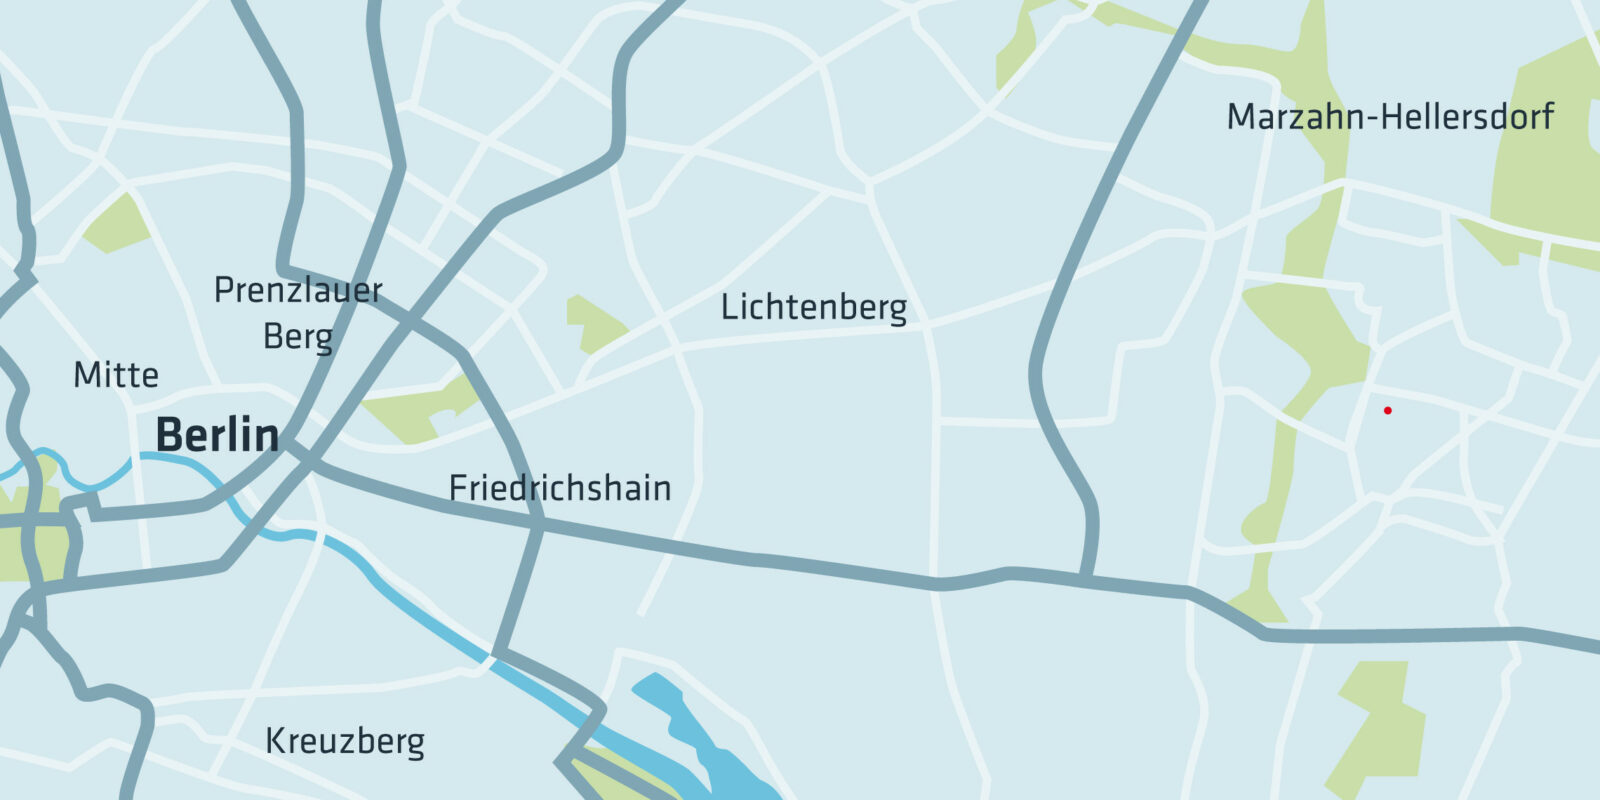 Karte Kaulsdorf mit dreieins Standorten